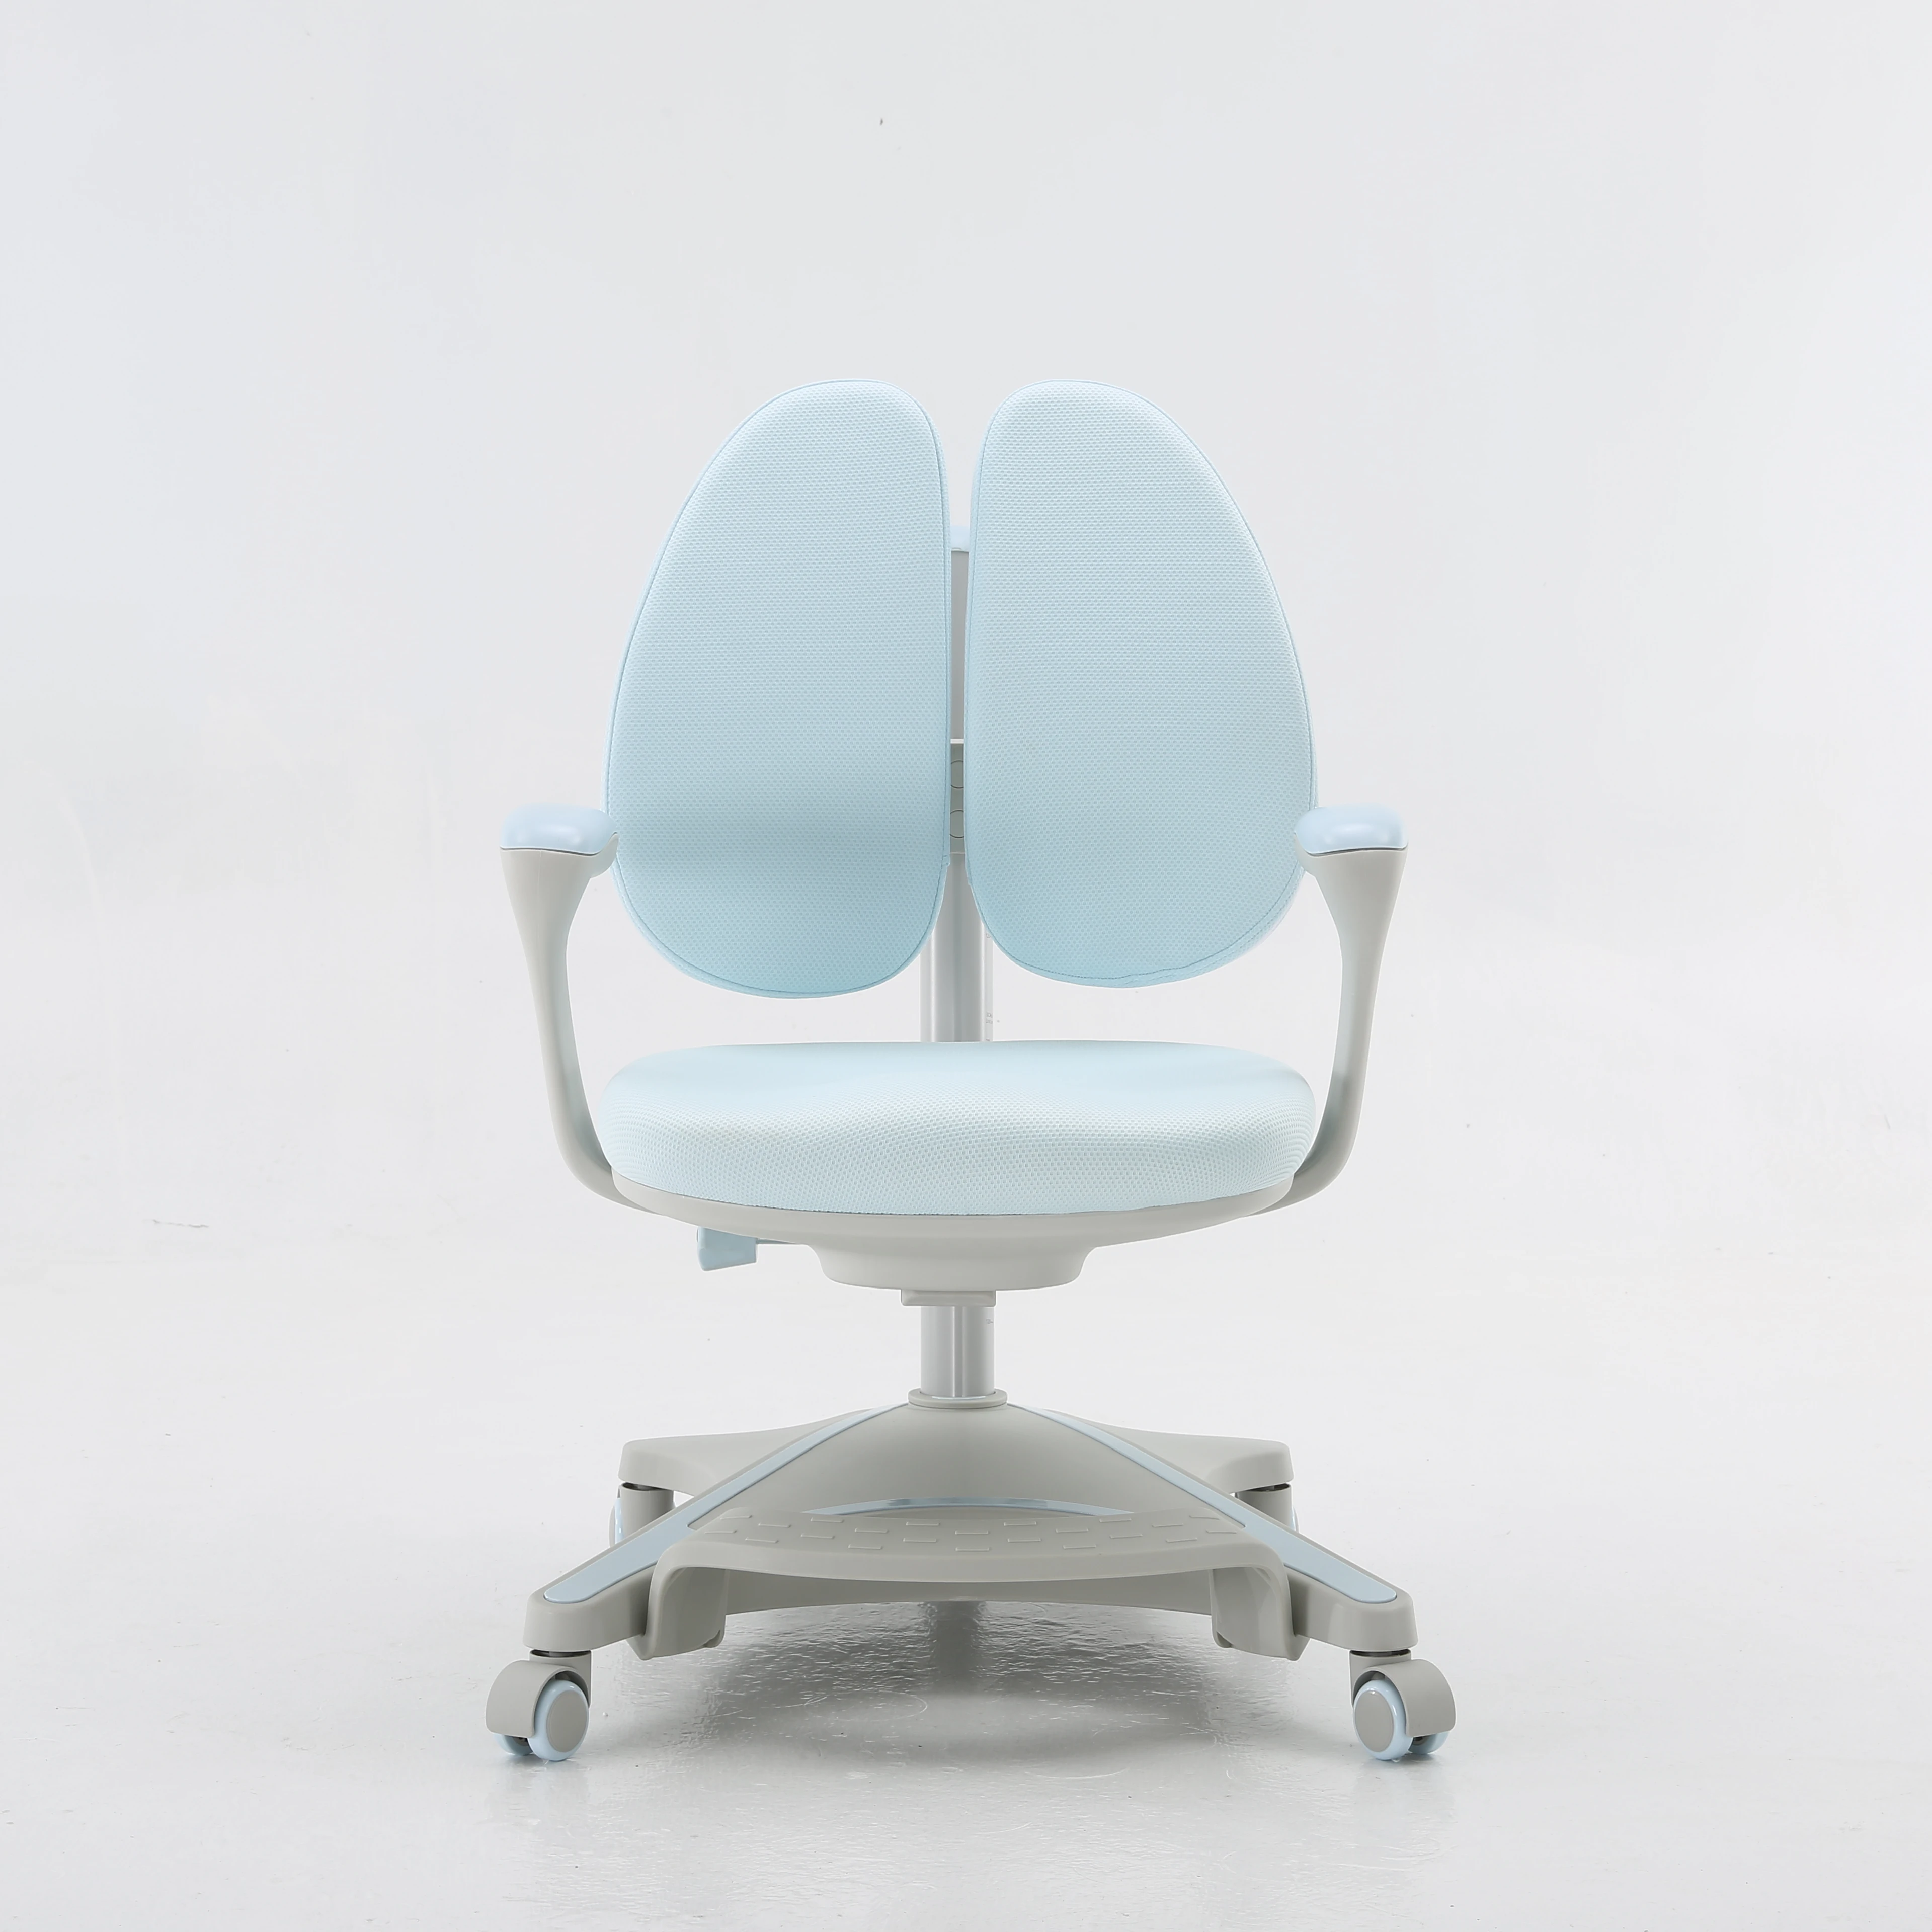 Кресло стул для новорожденных